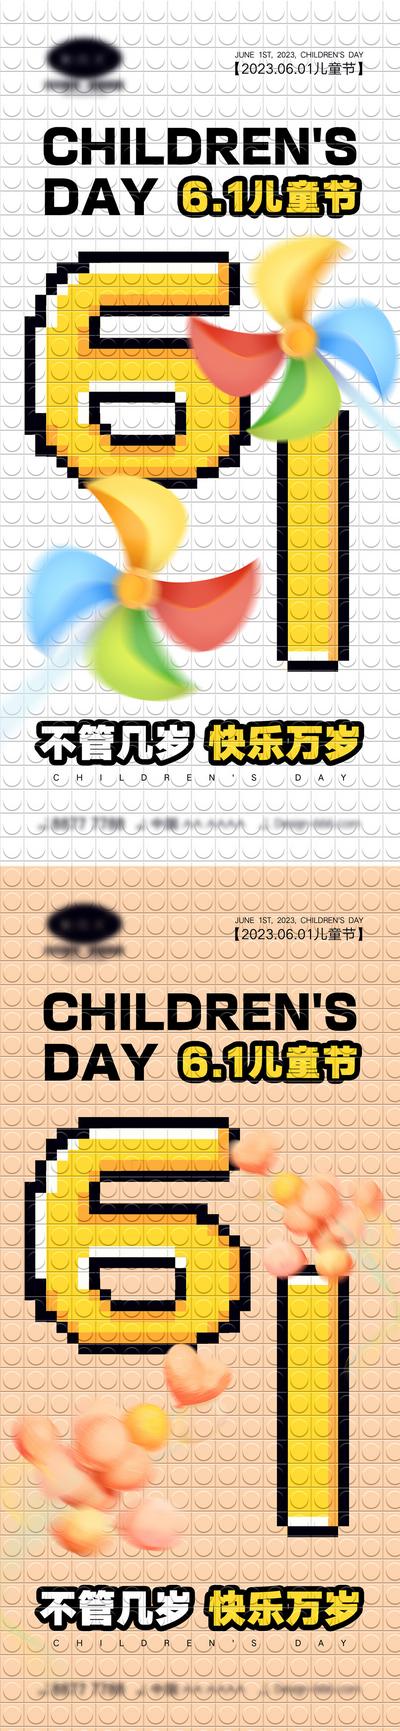 【南门网】海报 系列 公立节日 61儿童节 快乐六一 童真 六一 棒棒糖 孩子 木马 风筝 气球 积木